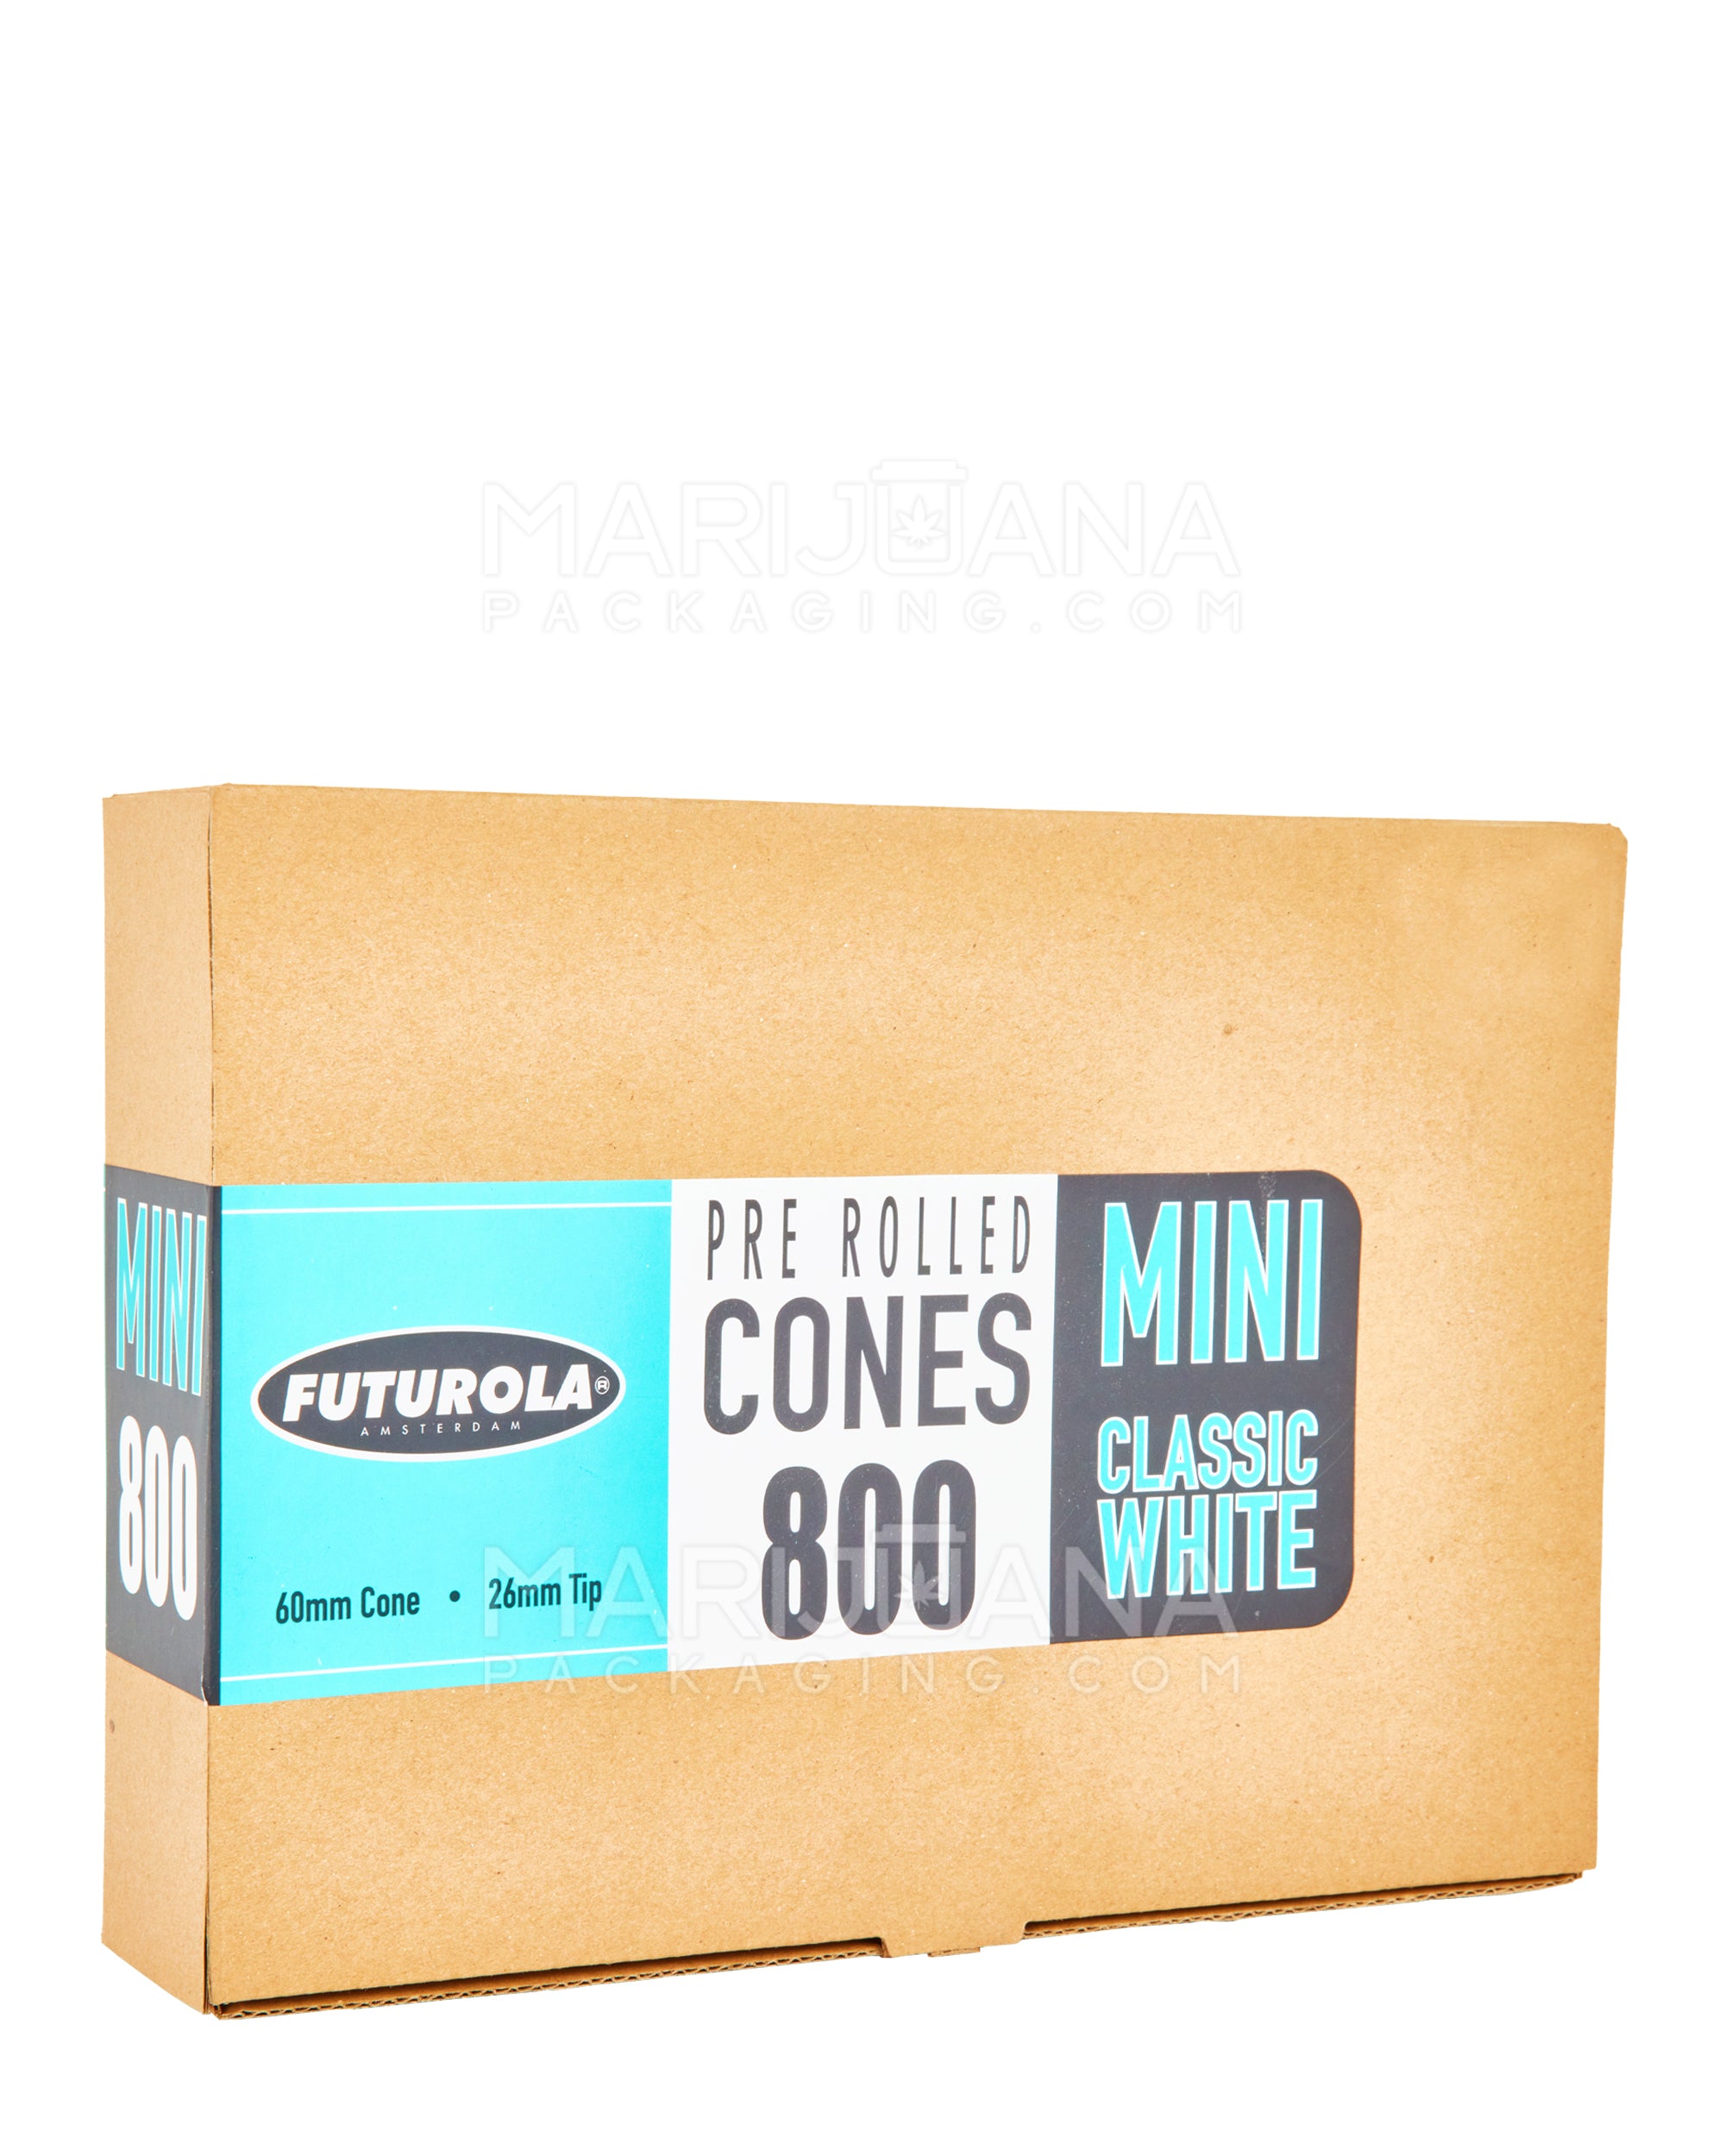 FUTUROLA | Mini Size Pre-Rolled Cones | 60mm - Classic White Paper - 800 Count - 1